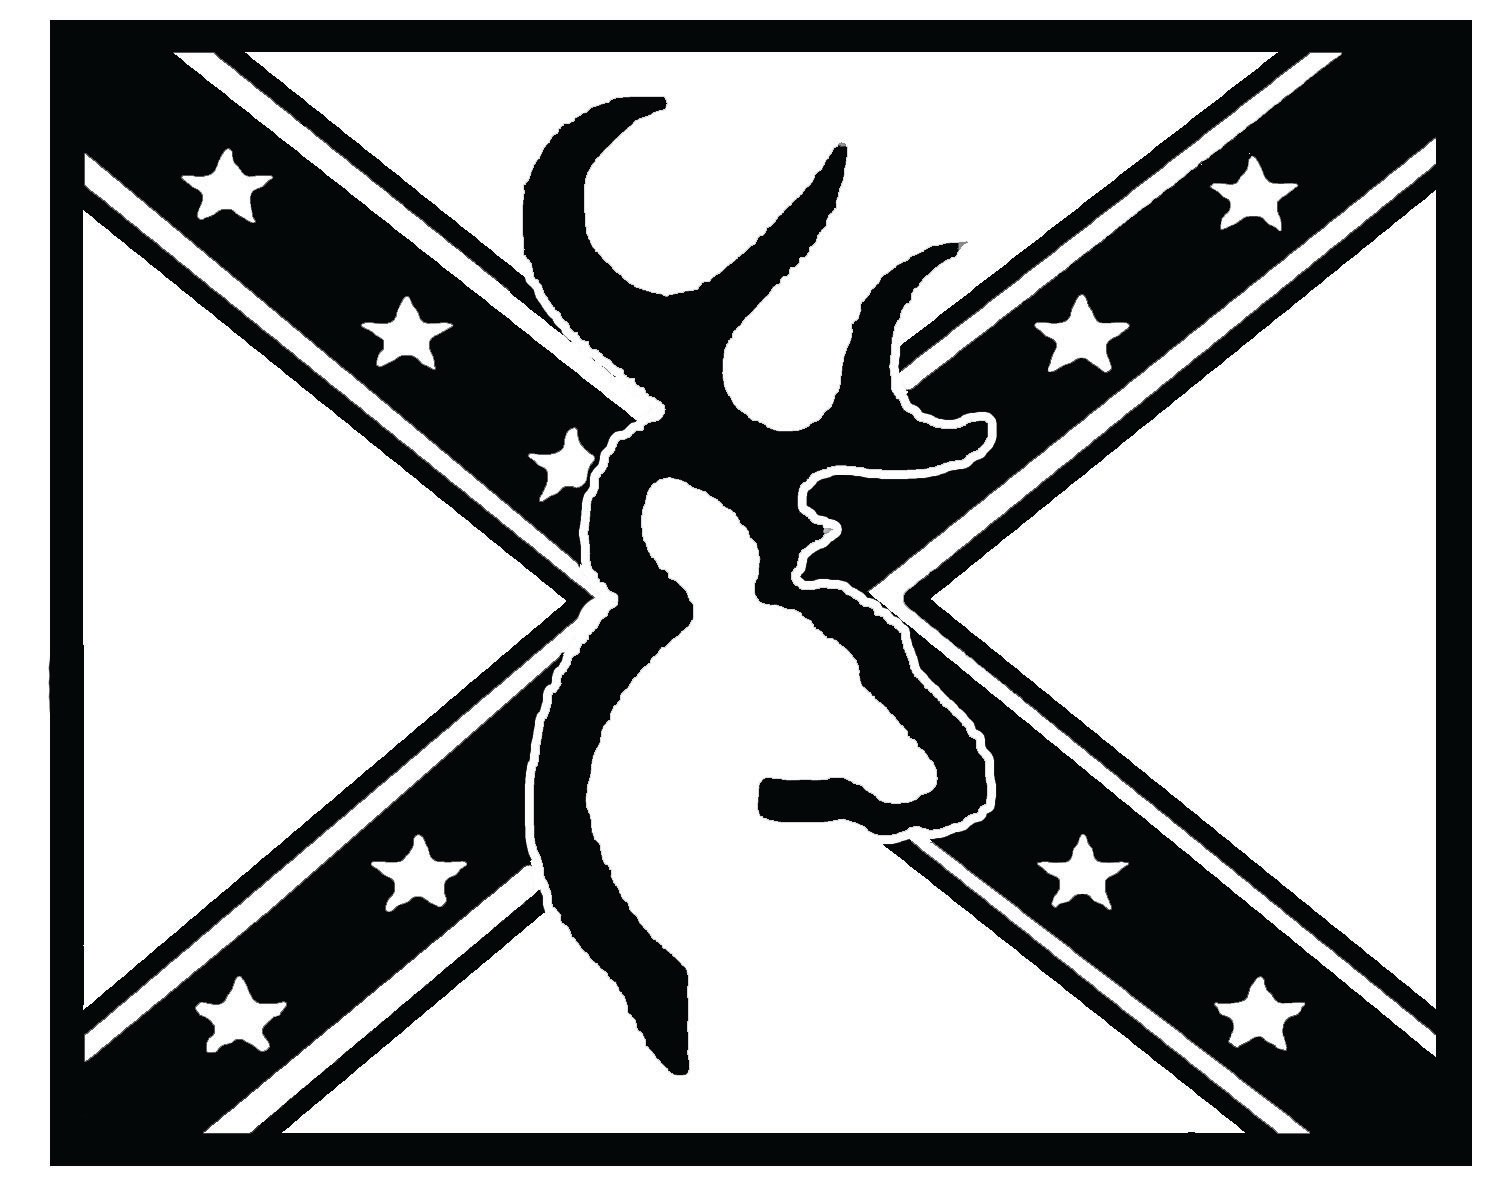 Gambar Rebel Flag Browning Logo Free Download Clip Art Images Heart di ...